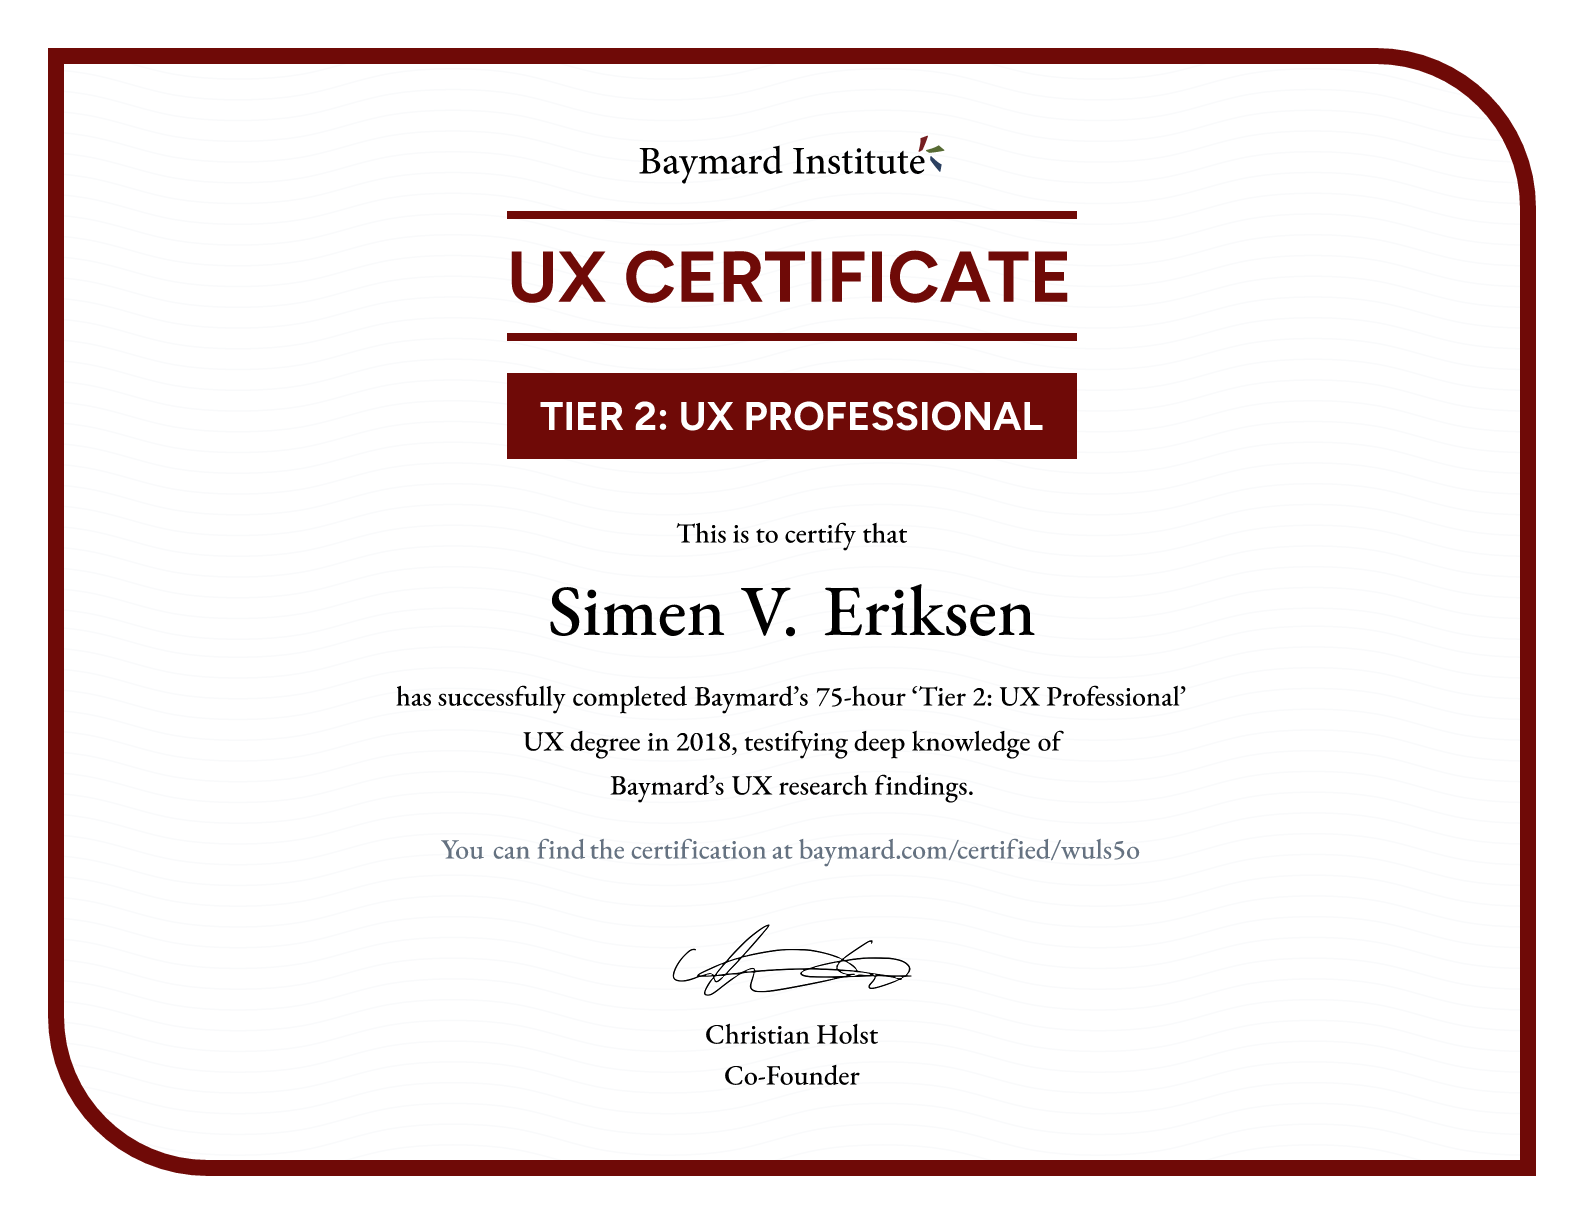 Simen V. Eriksen’s certificate